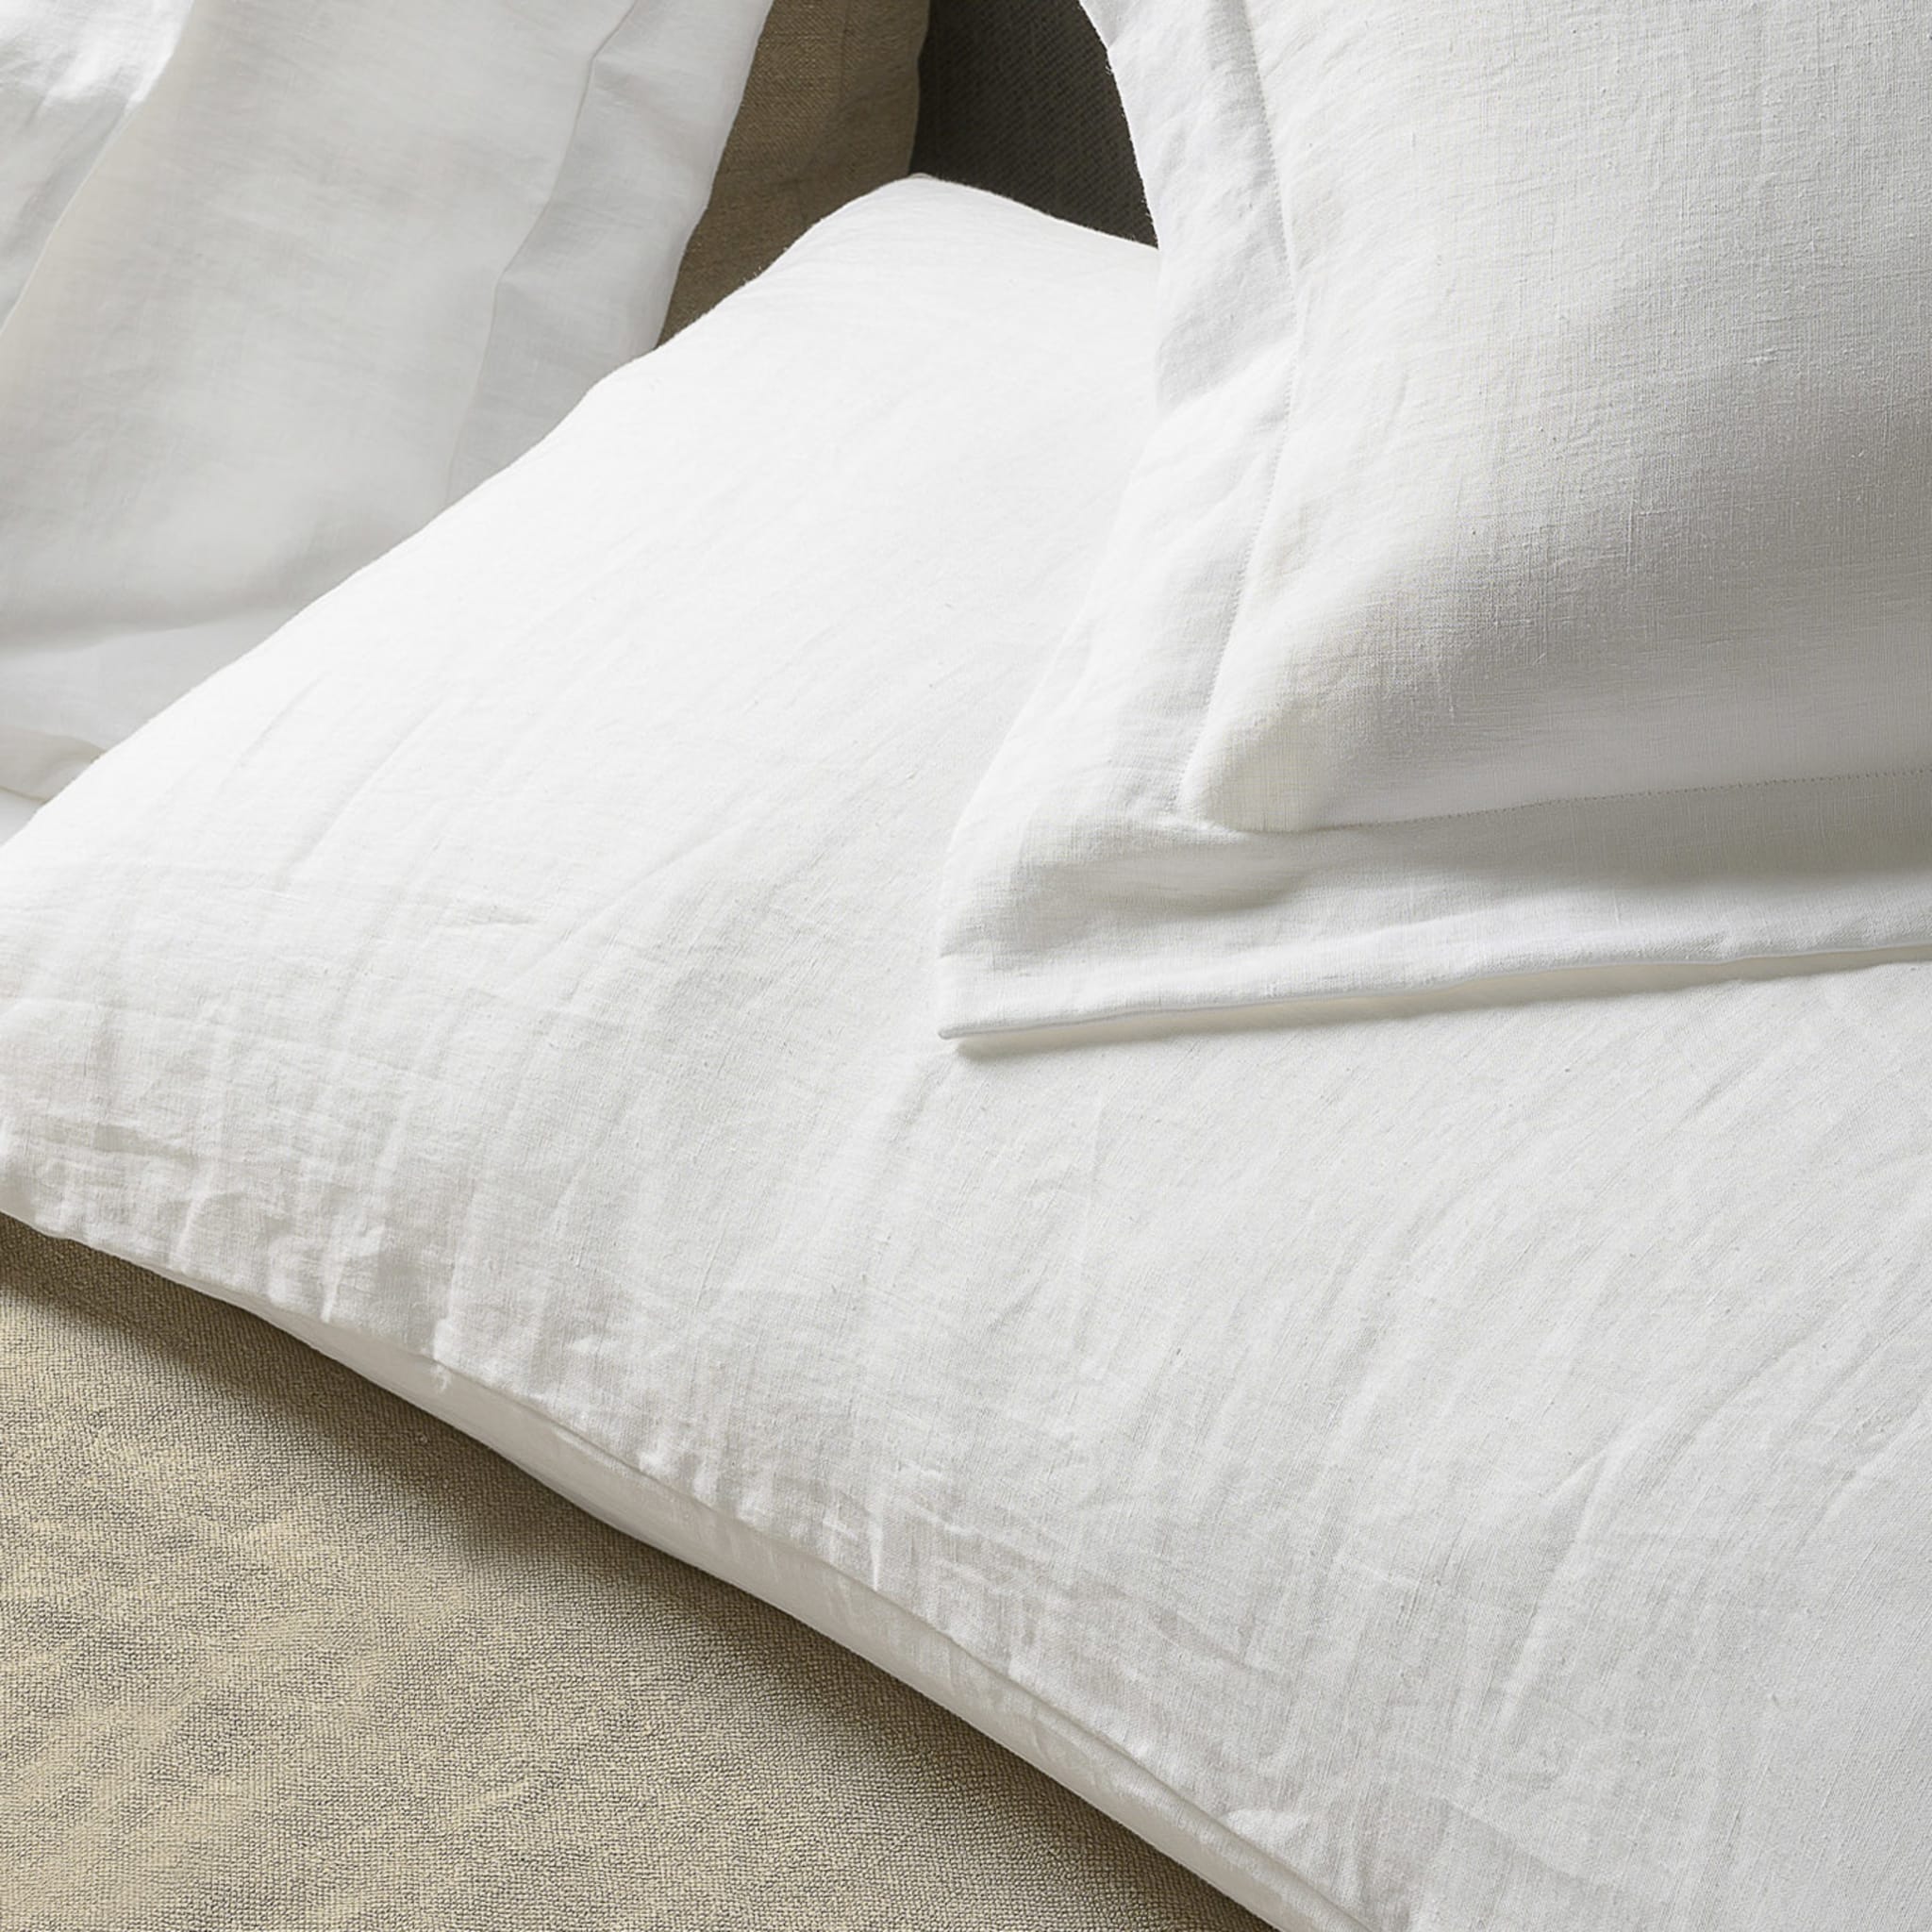 Kanapa White Set of 2 Pillowcases - Alternative view 4